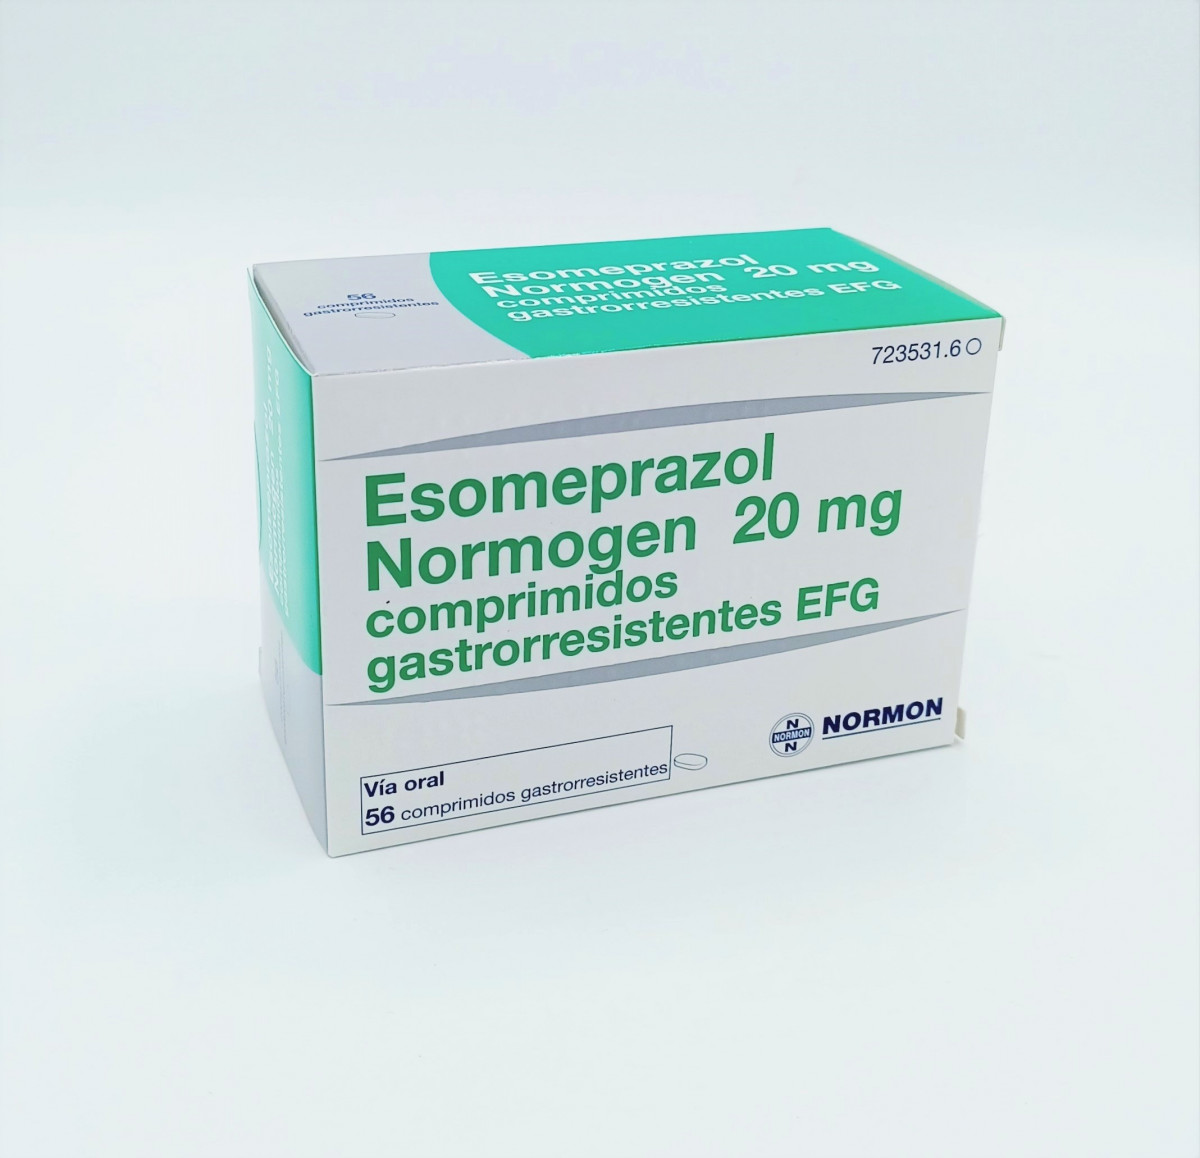 ESOMEPRAZOL NORMOGEN 20 MG COMPRIMIDOS GASTRORRESISTENTES EFG 28 comprimidos (Blister OPA/Al/PE-Al/PE) fotografía del envase.